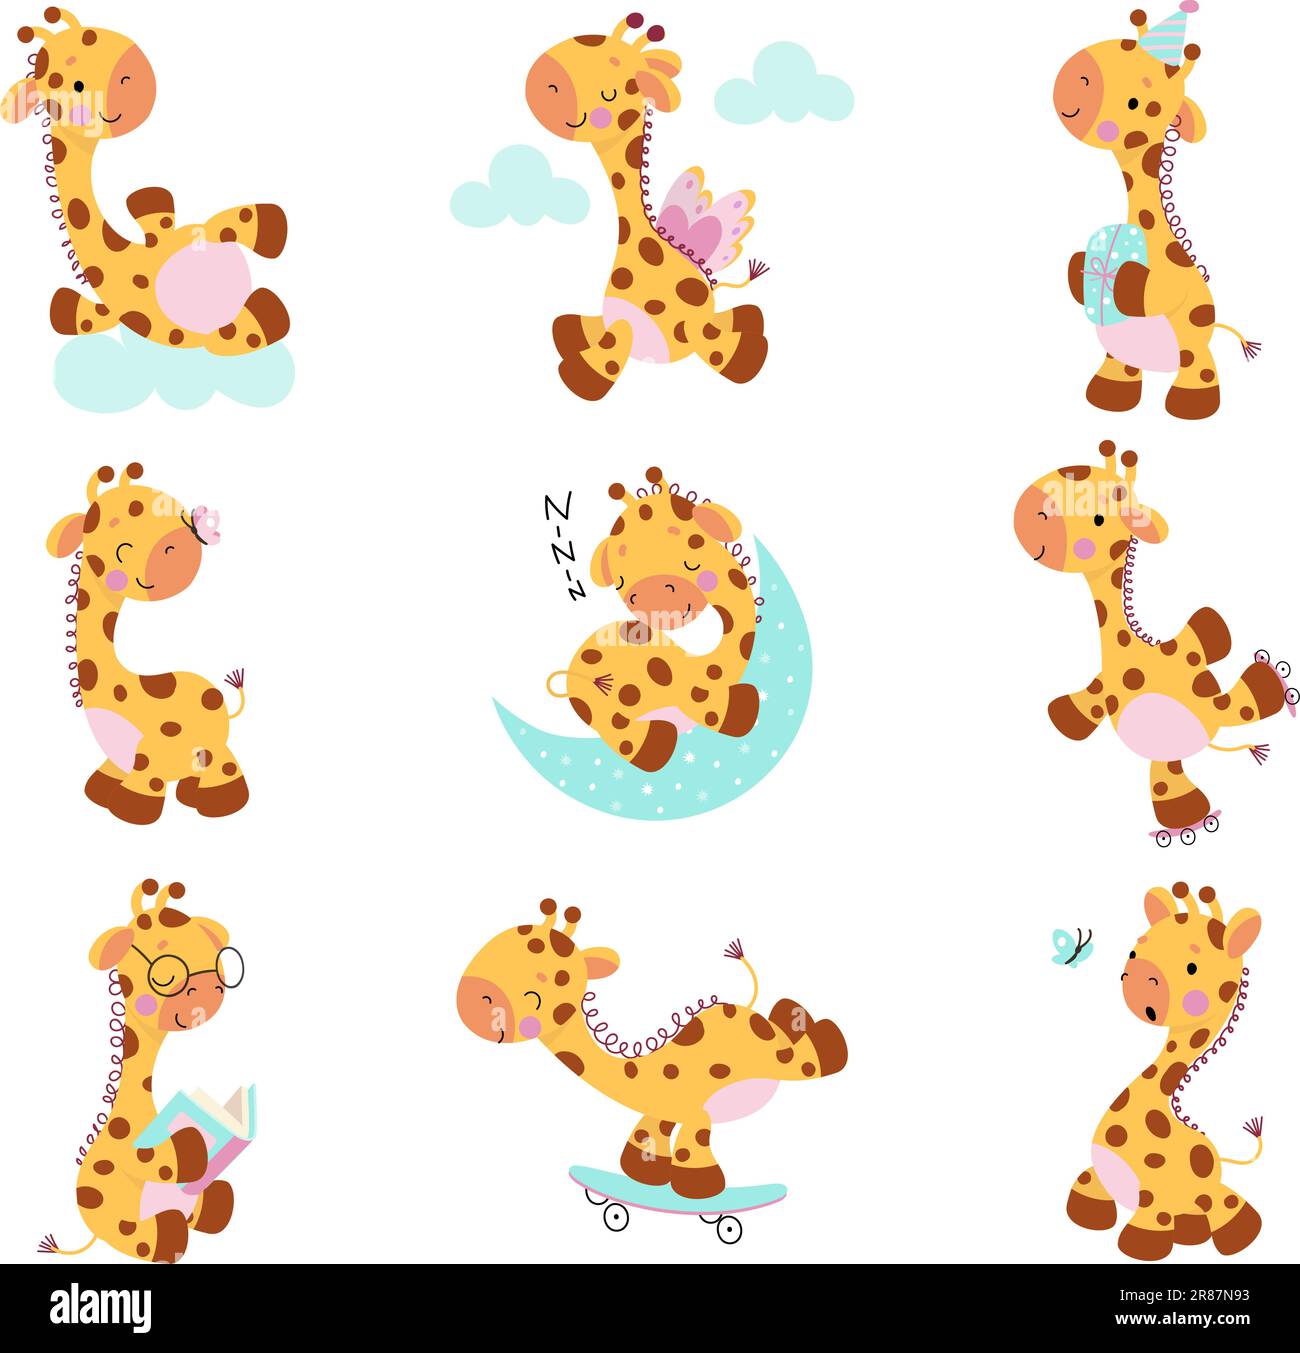 Süße Giraffen, Baby Giraffe Posen Cartoon Kollektion. Kinder exotische Zootiere, niedliche wilde Safari afrikanische Tiere heutzutage Vektorset Stock Vektor